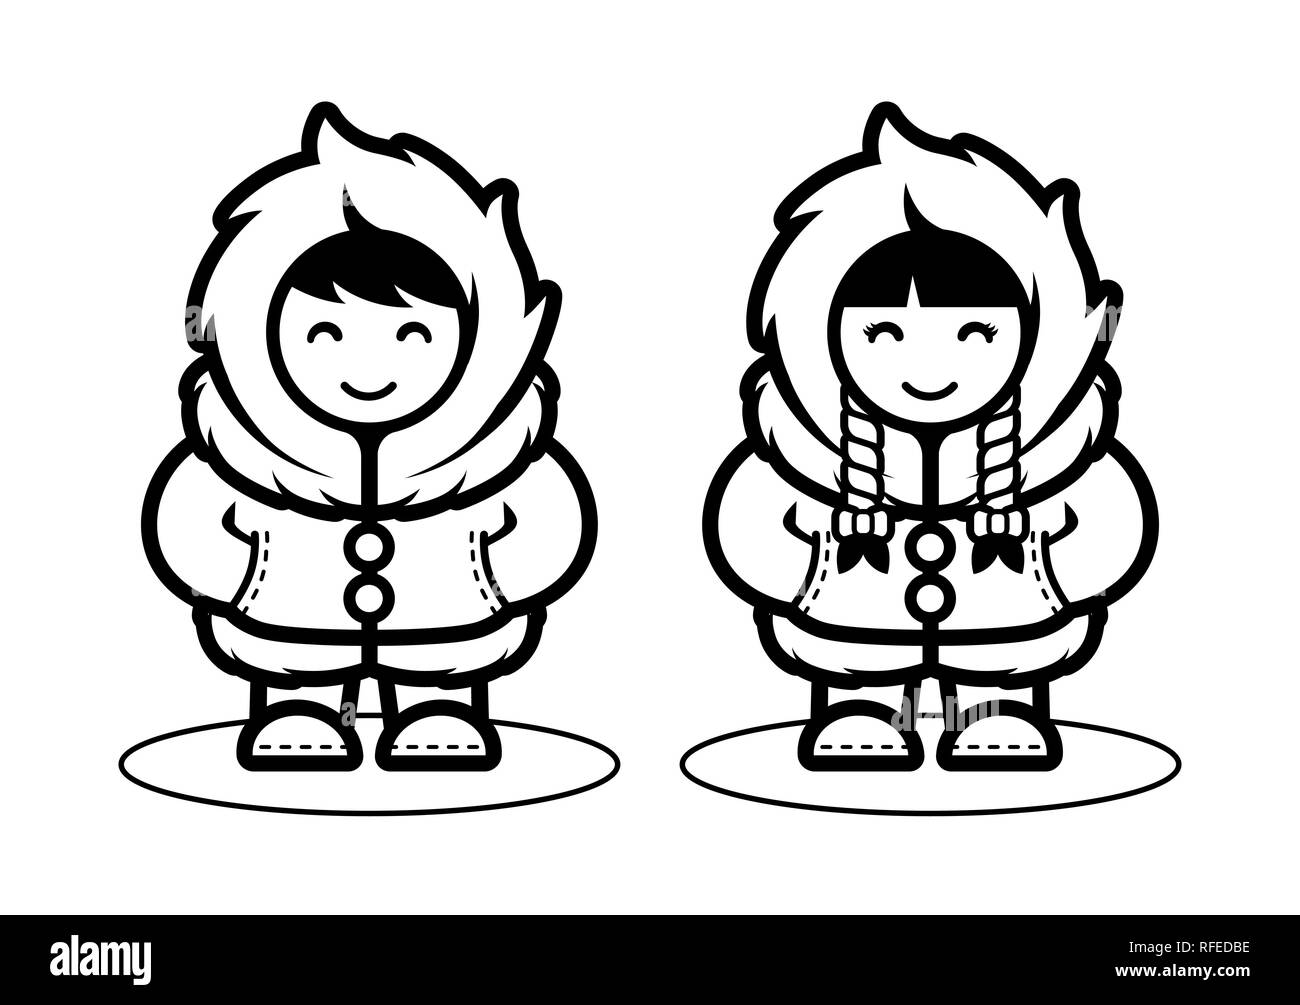 Jeune Eskimo Cute Couple illustration dans le style dessin animé pour les enfants / Enfants à colorier. Les personnes vivant dans l'arctique au pôle nord modèle plat. Illustration de Vecteur